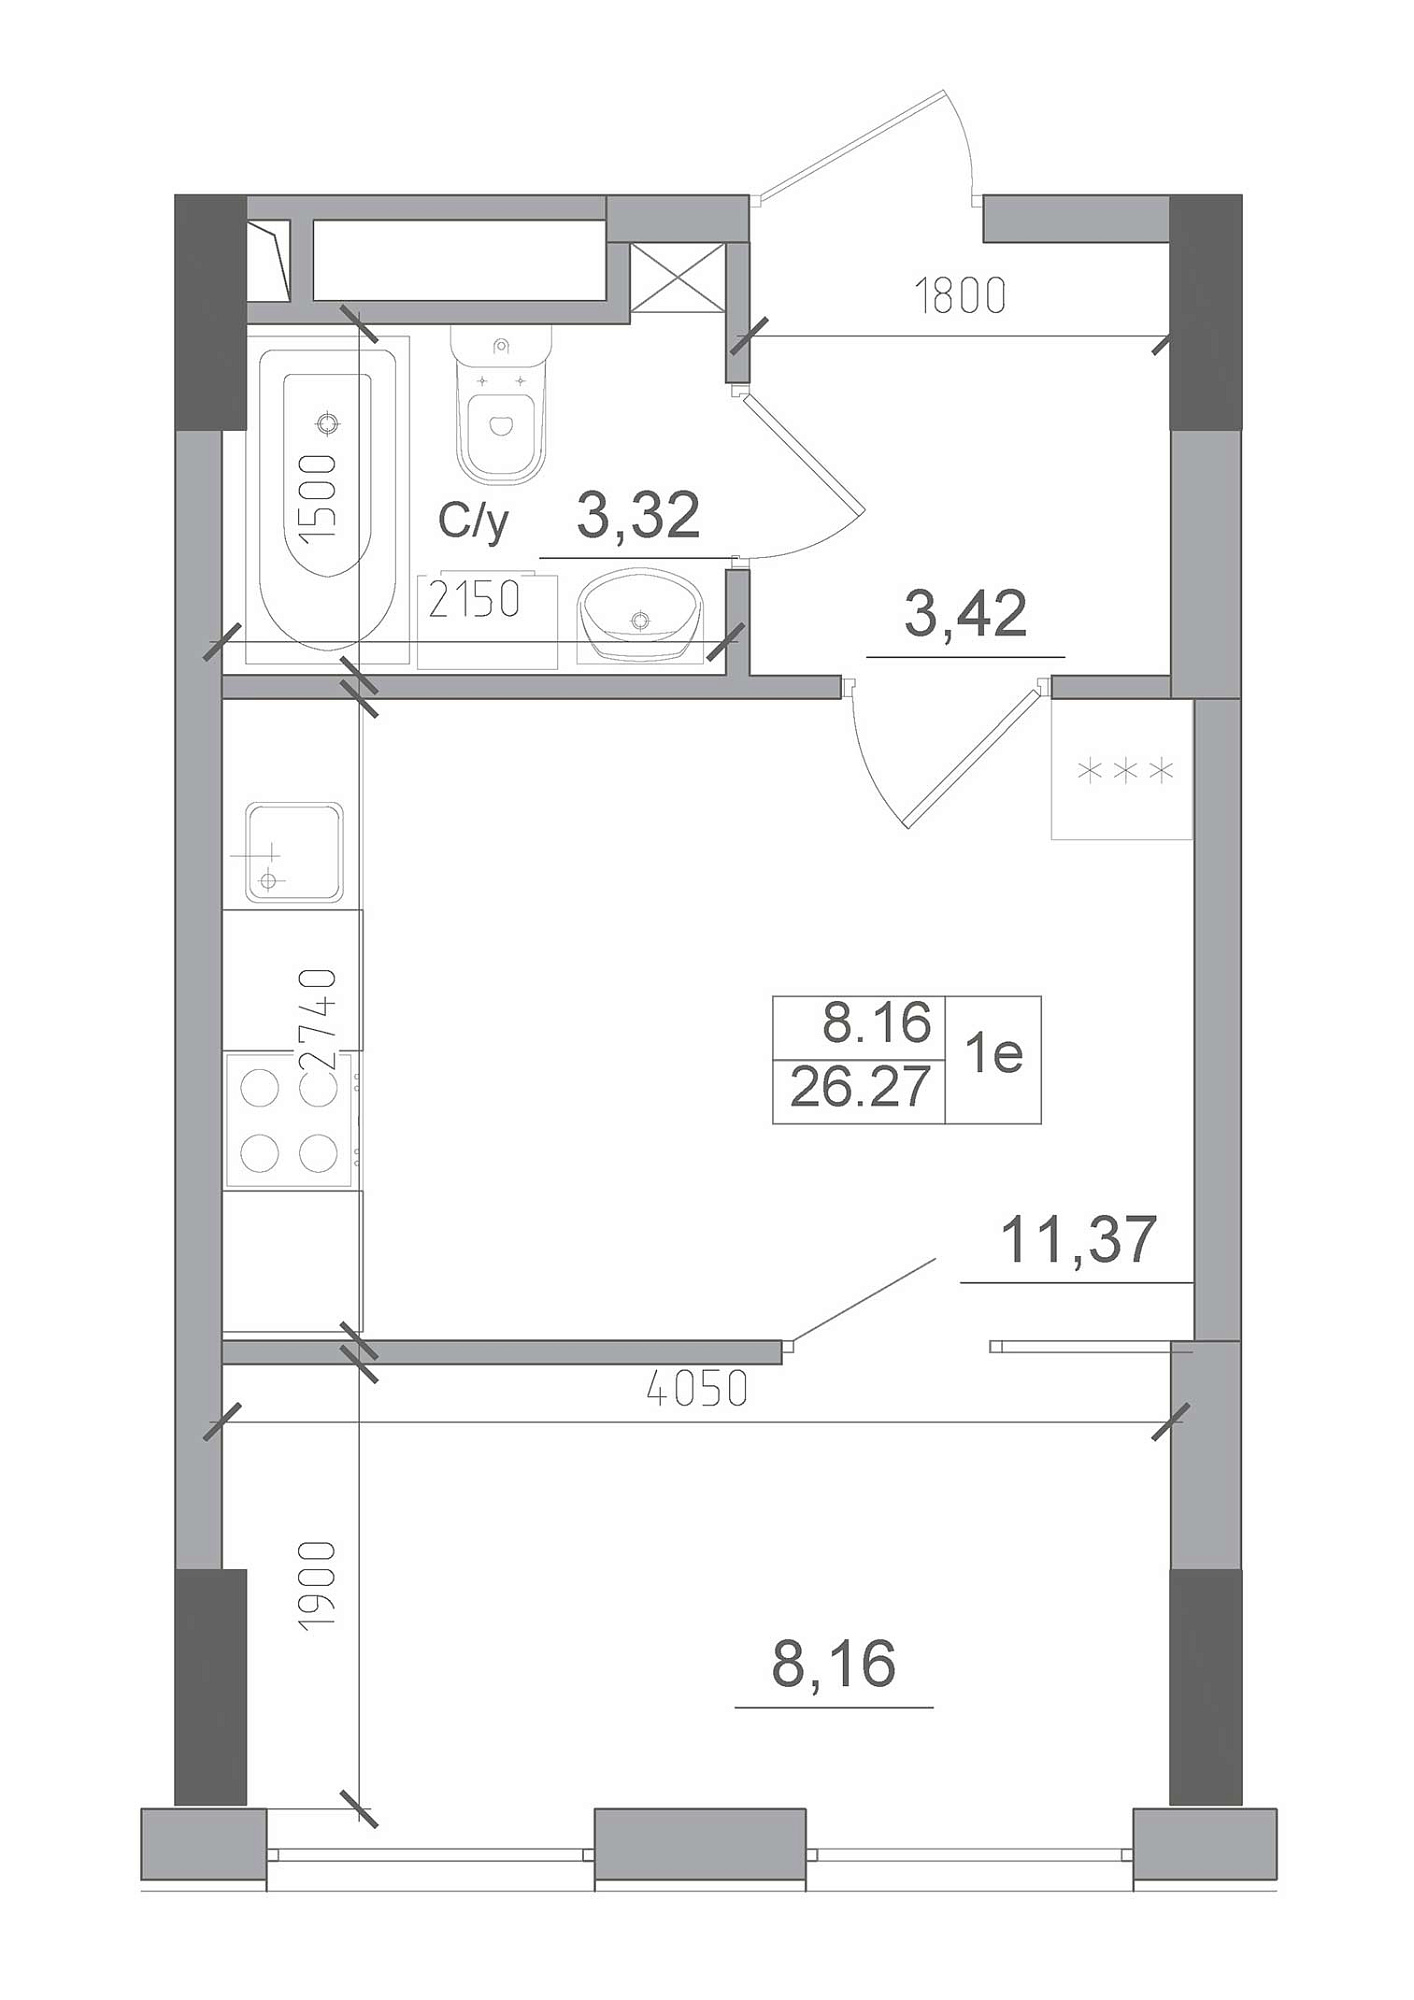 Планировка 1-к квартира площей 26.27м2, AB-22-03/00009.